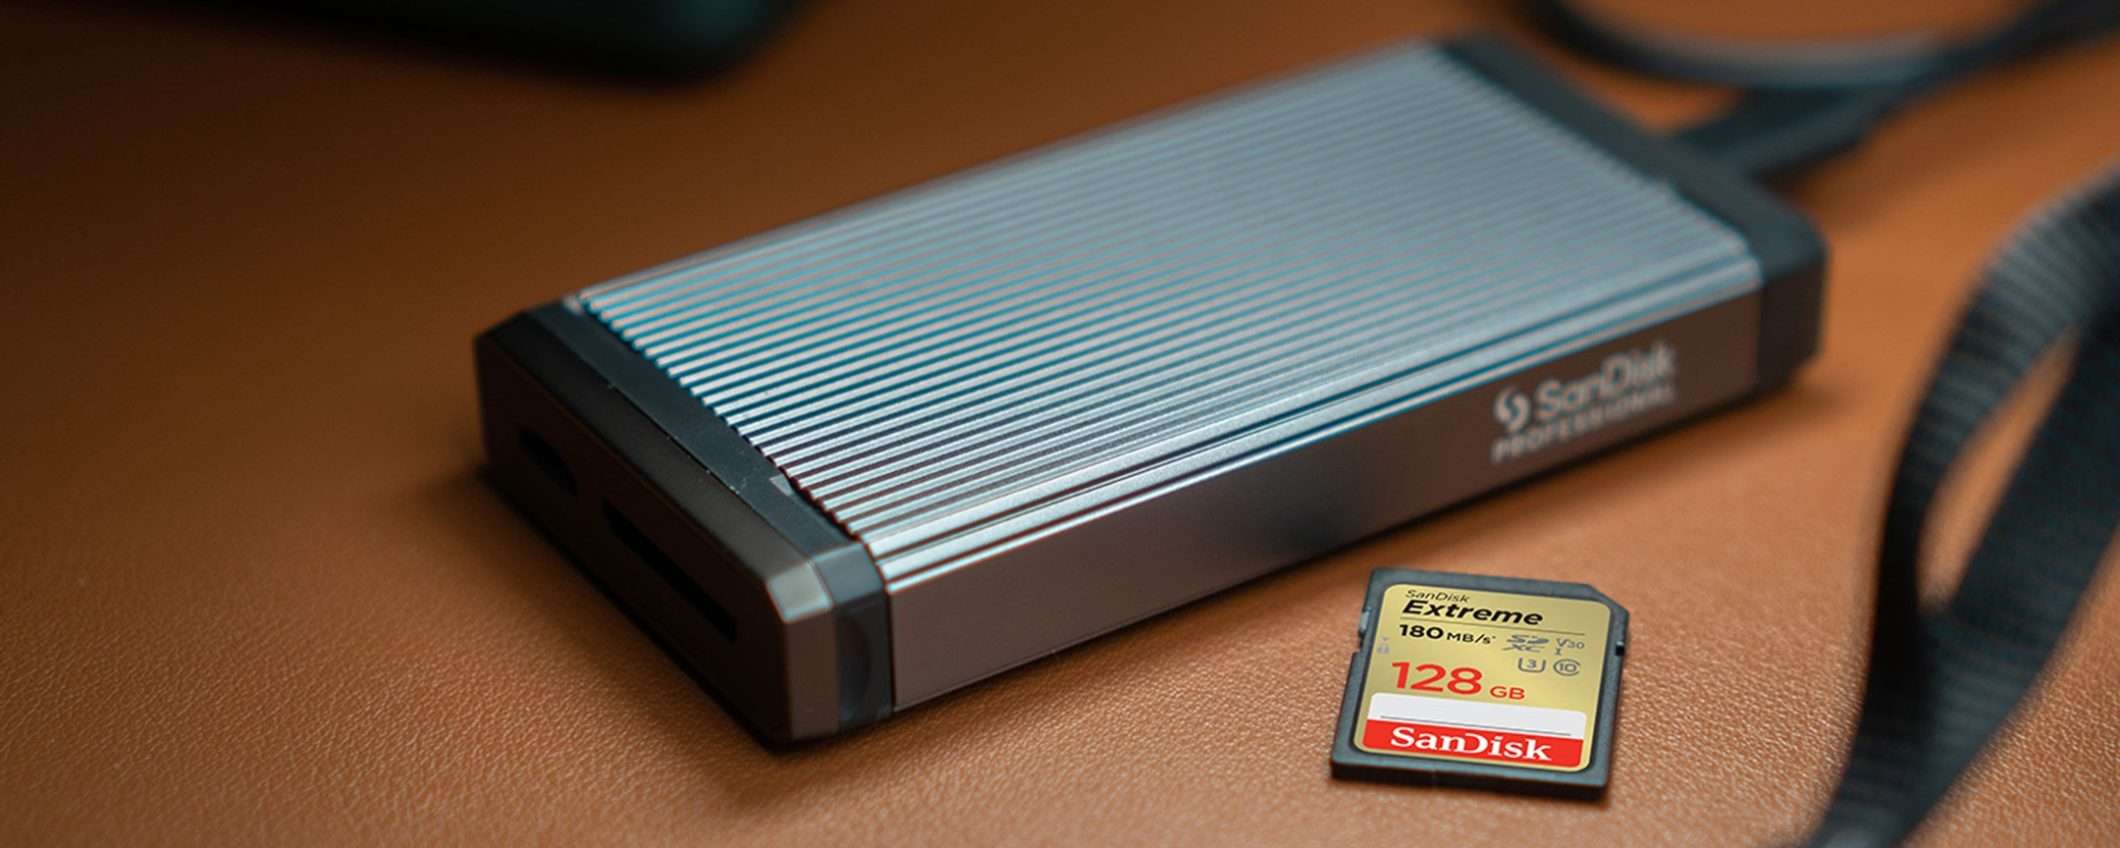 SD SanDisk Extreme da 128GB + RescuePRO Deluxe a soli 22€ su Amazon